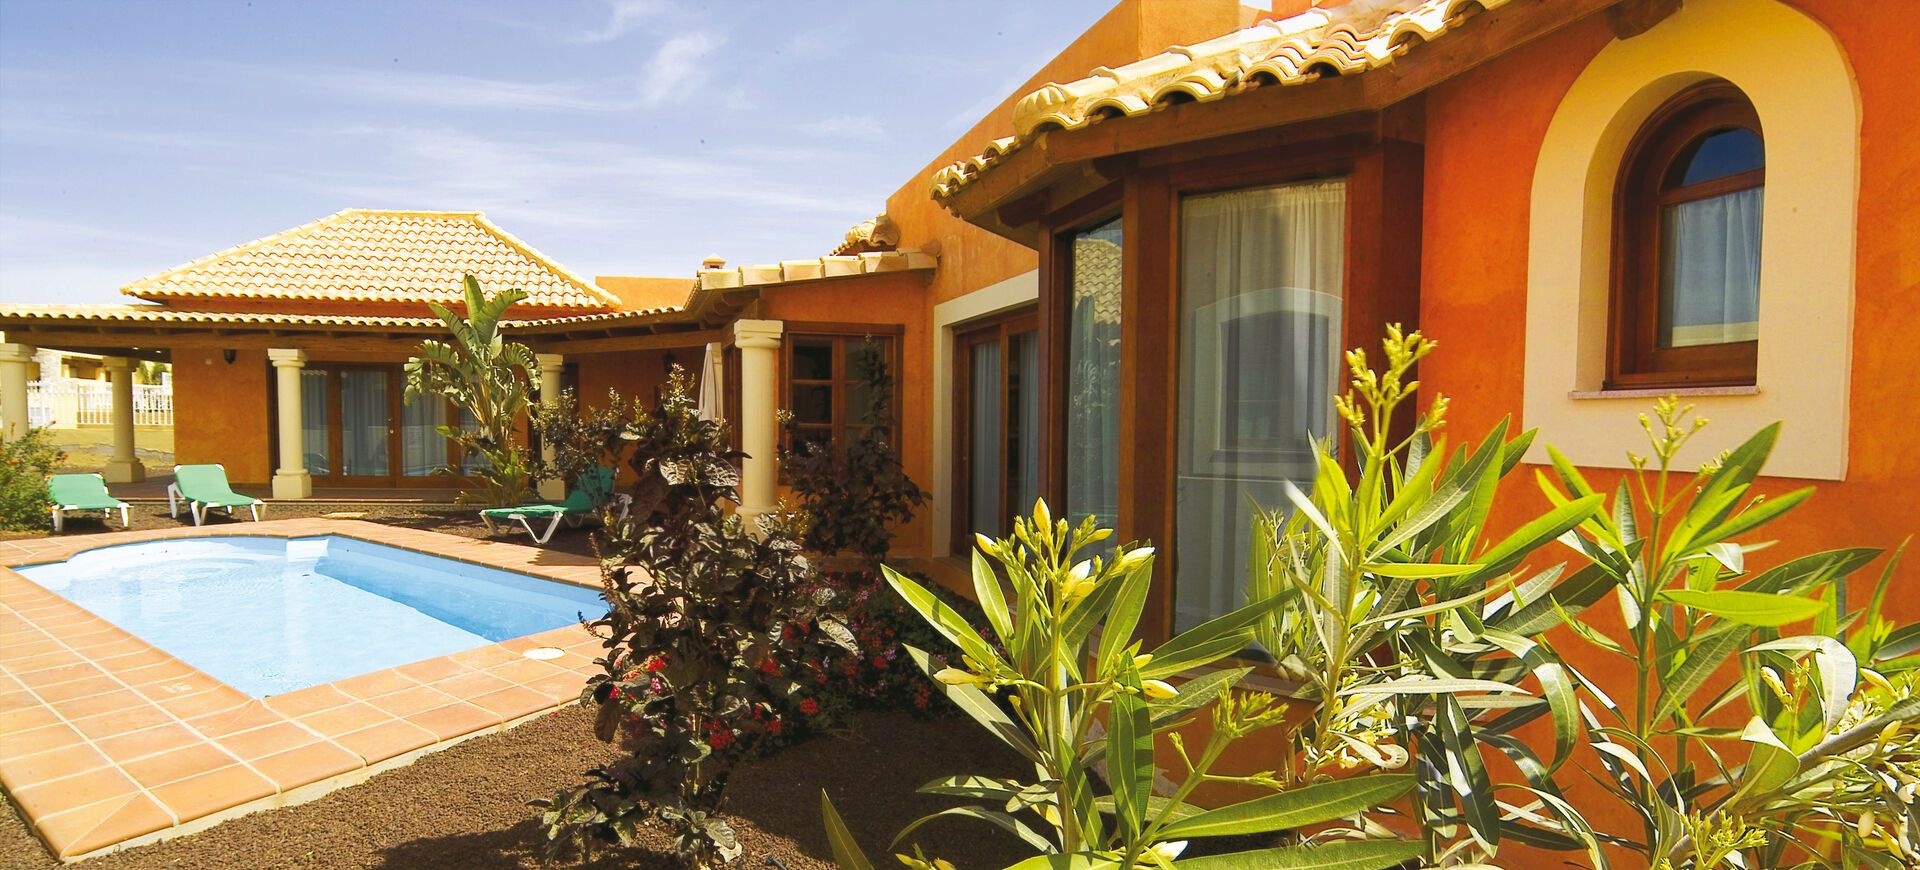 Canaries - Fuerteventura - Espagne - Villas Brisas del Mar 4*